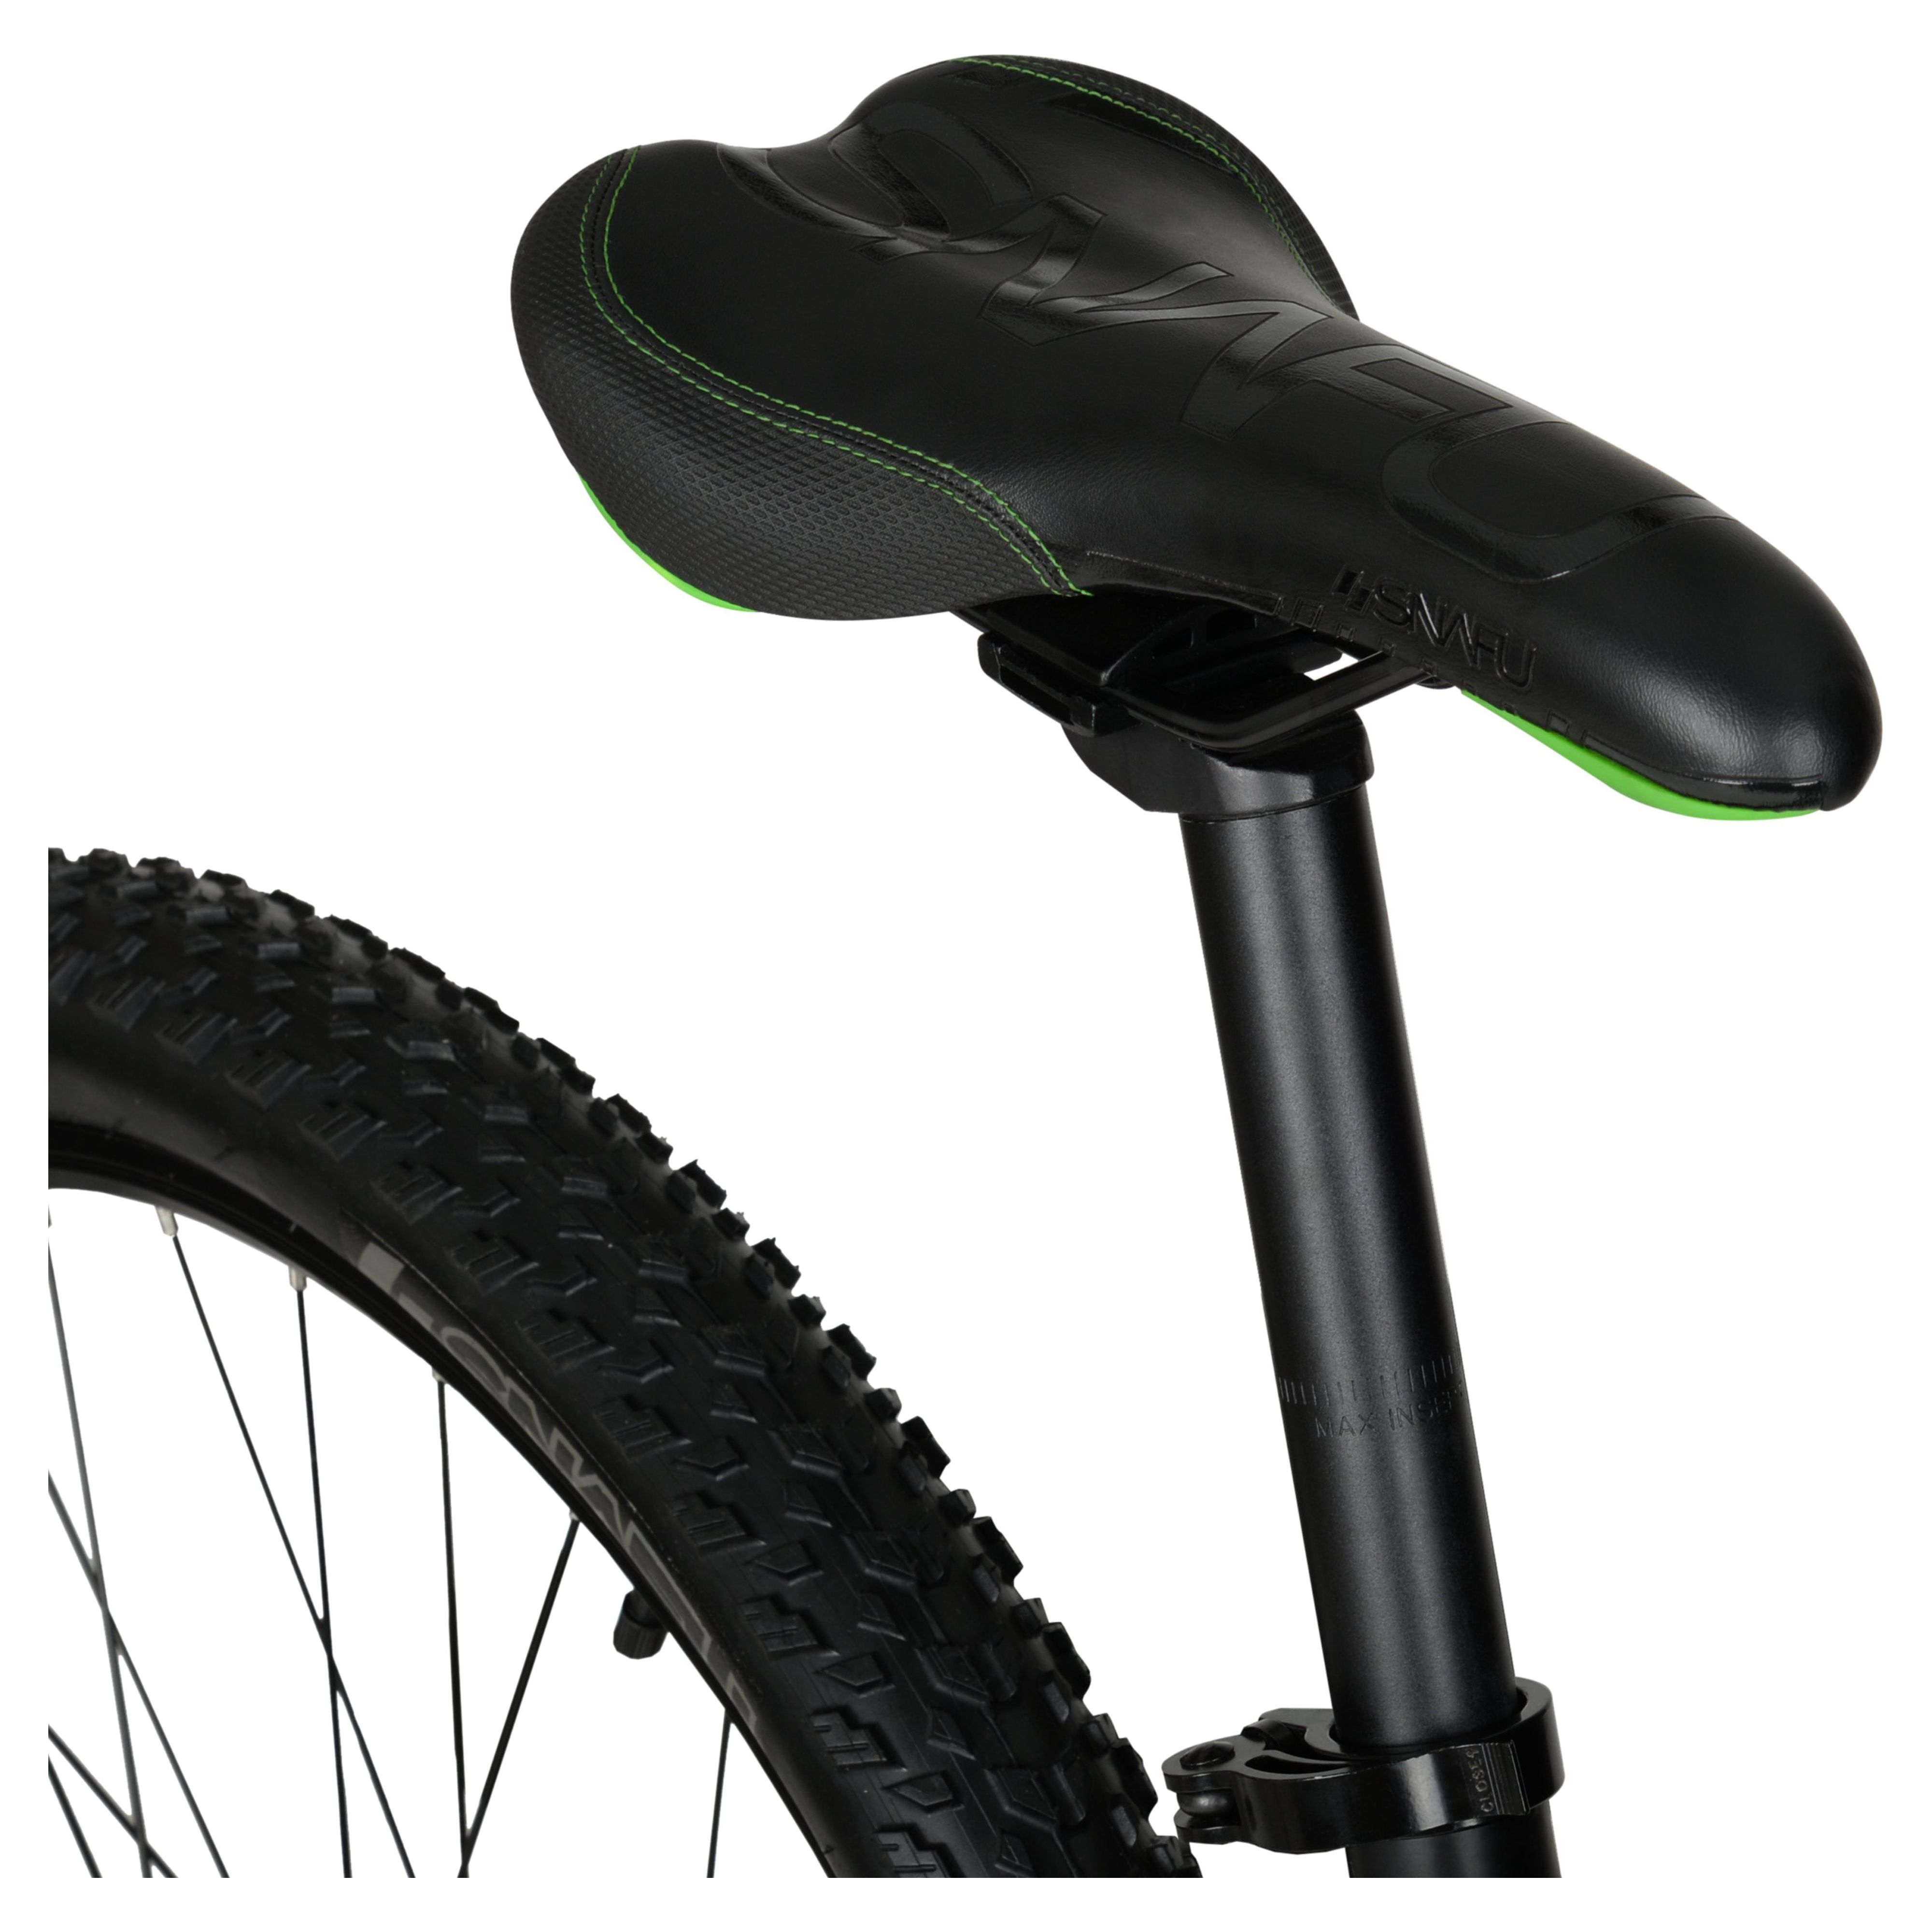 Hyper 29" Carbon Fiber Men's Mountain Bike, Black/Green - image 5 of 12